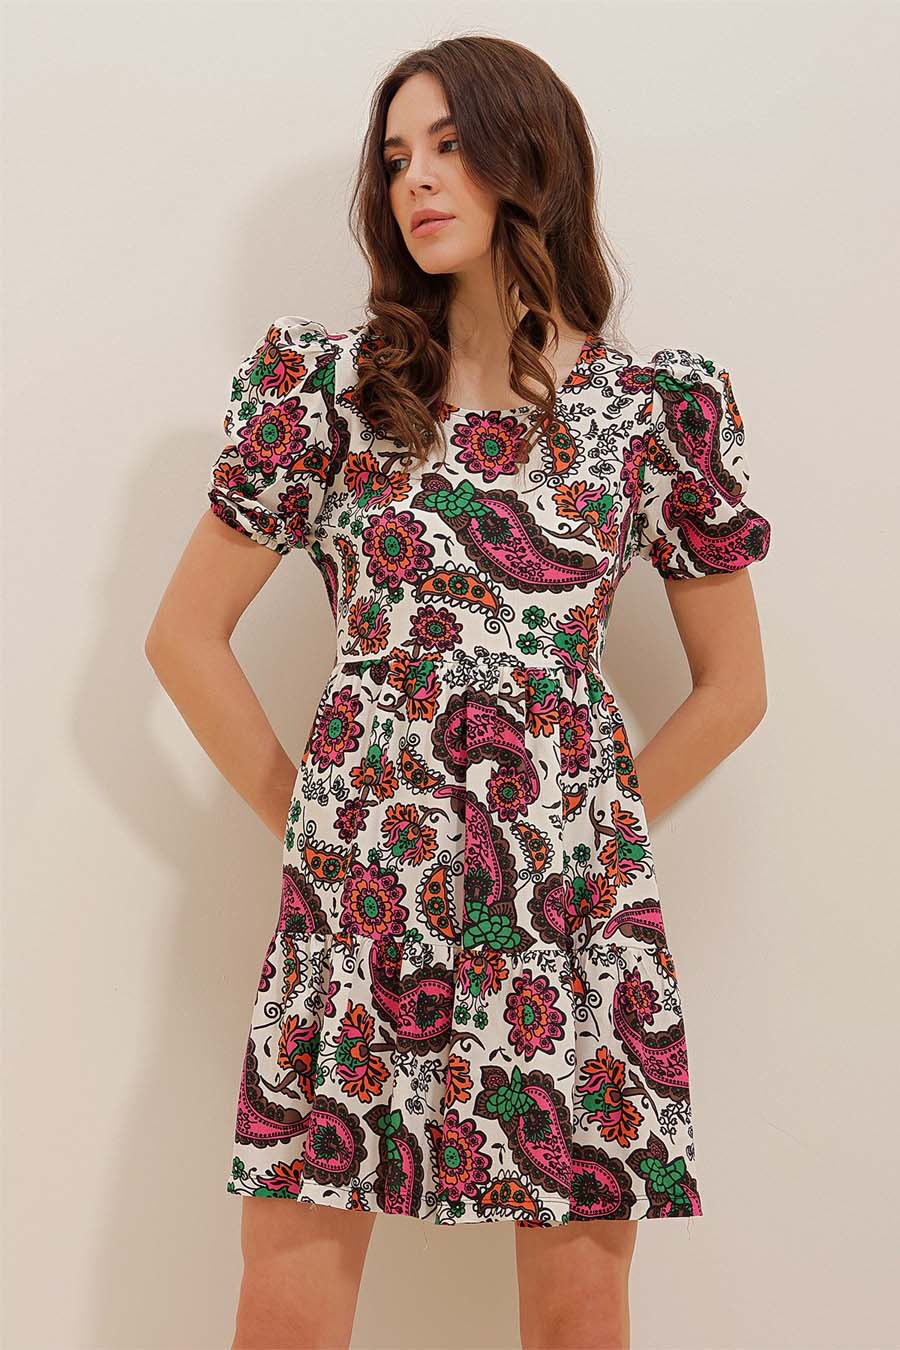 Γυναικείο φόρεμα Neytiri, Μπεζ/Ροζ 3